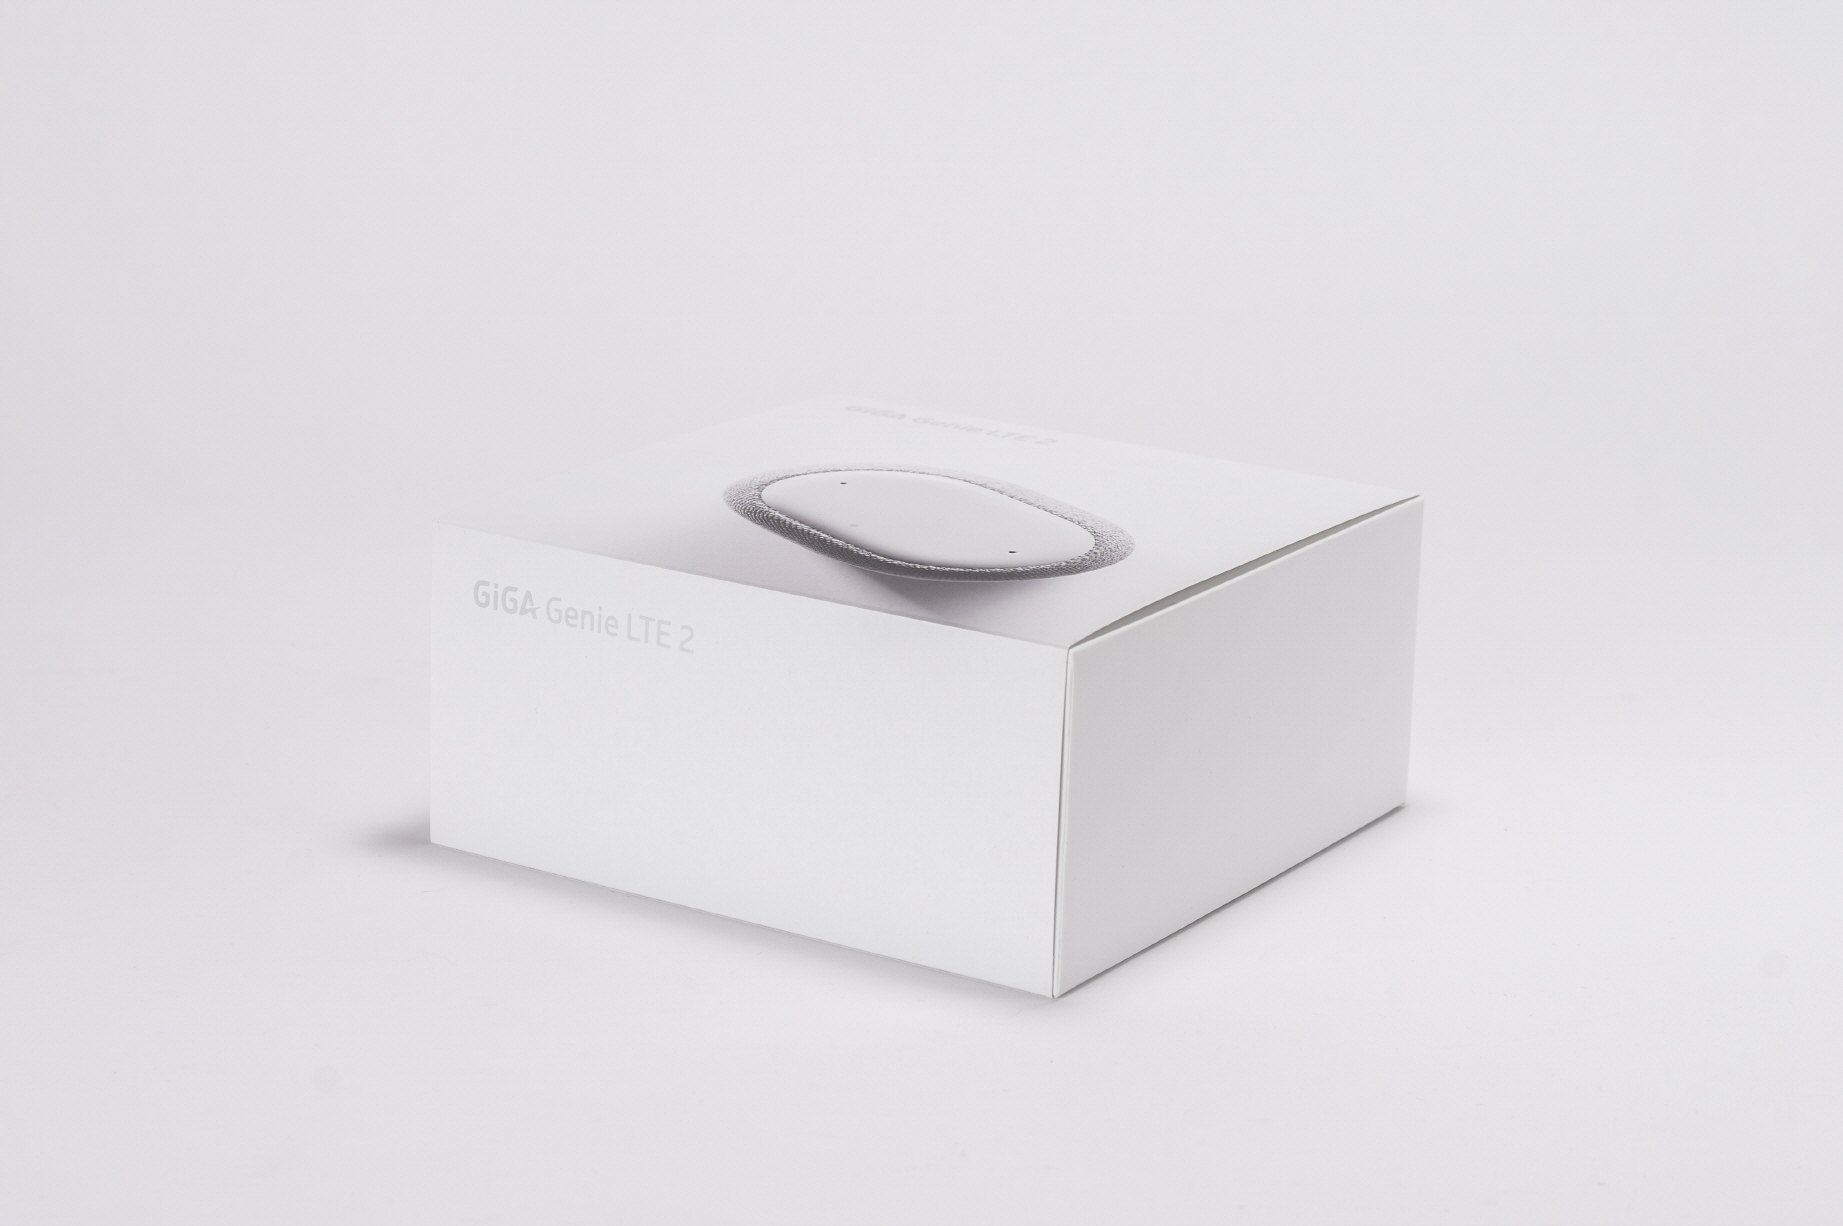 KT 기가지니 인공지능 스피커 상하싸바리 패키지 KT Ai speaker rigid box package